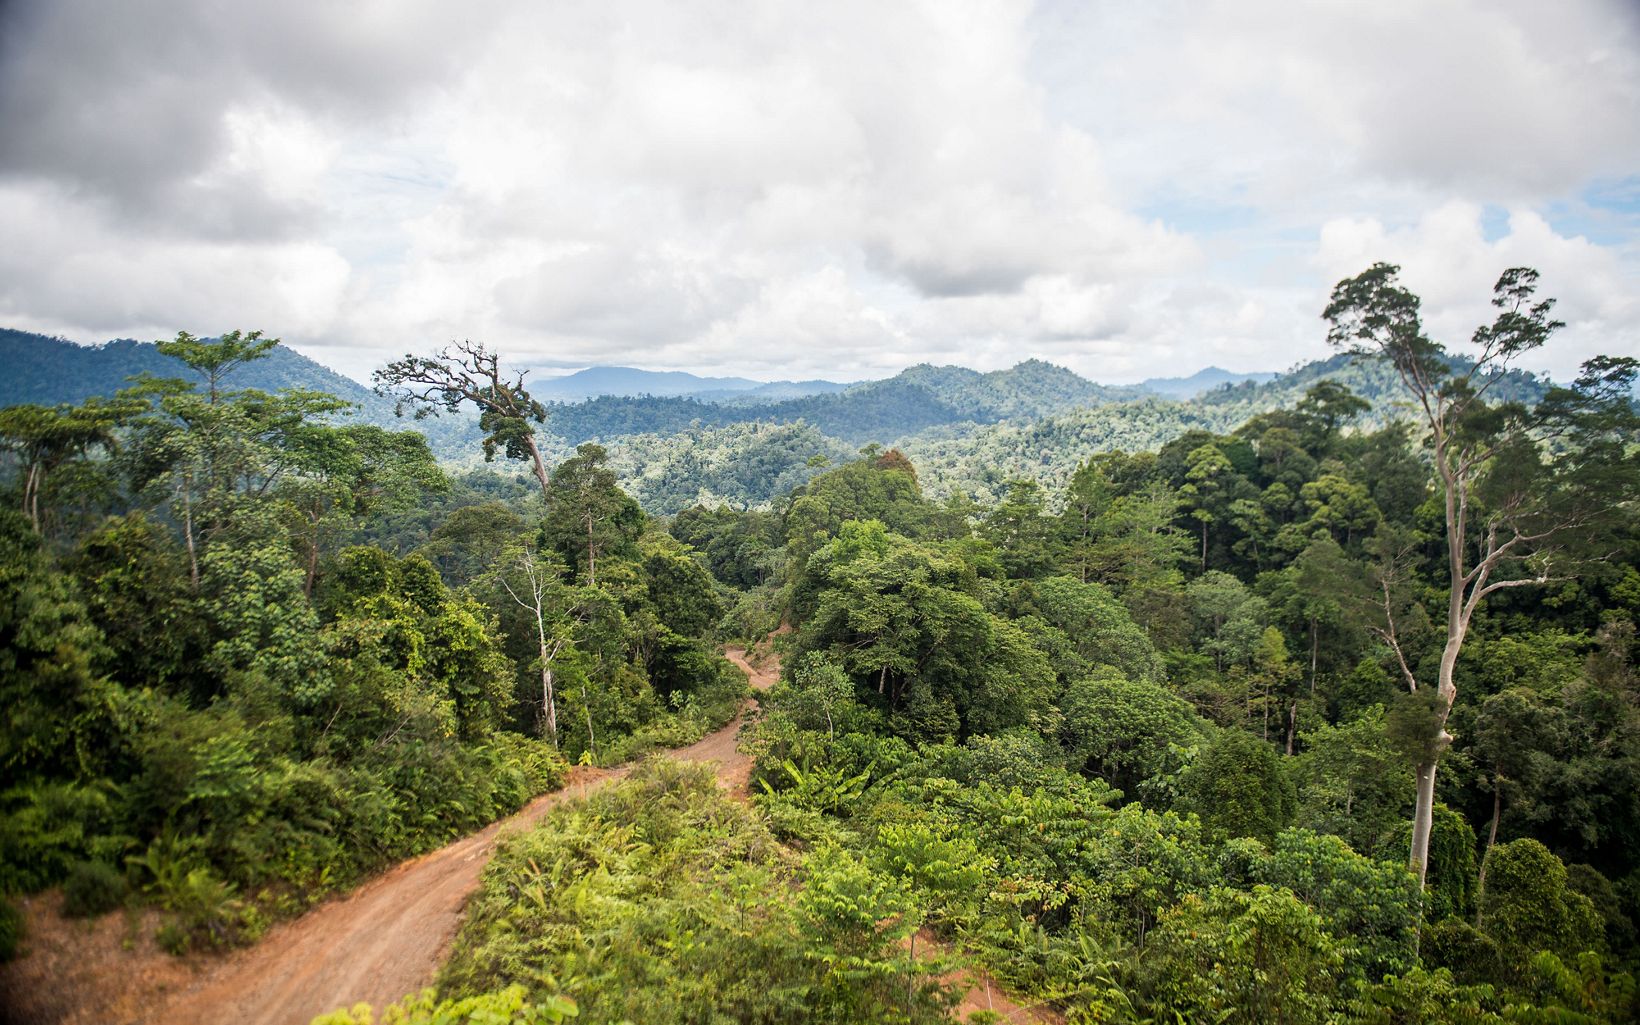 MIENTRAS NO HAY PANACEA, RIL-C tiene un enorme potencial para conciliar los objetivos económicos y ambientales. Un mundo con más bosques es un buen augurio para las personas y la naturaleza por igual. © Nick Hall